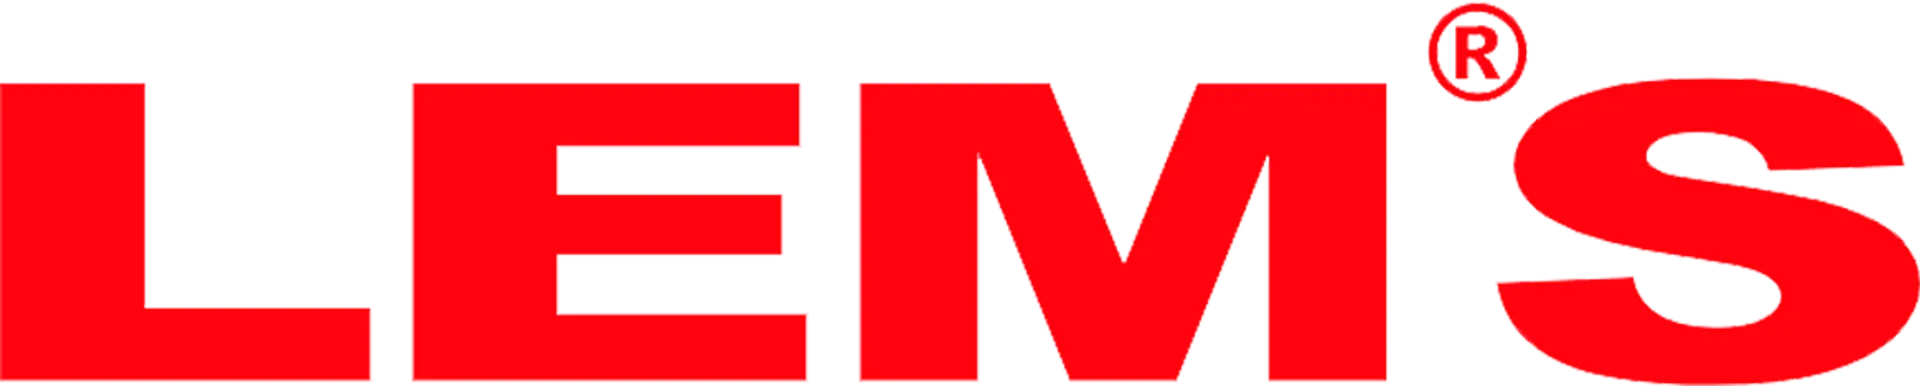 LEM'S logo